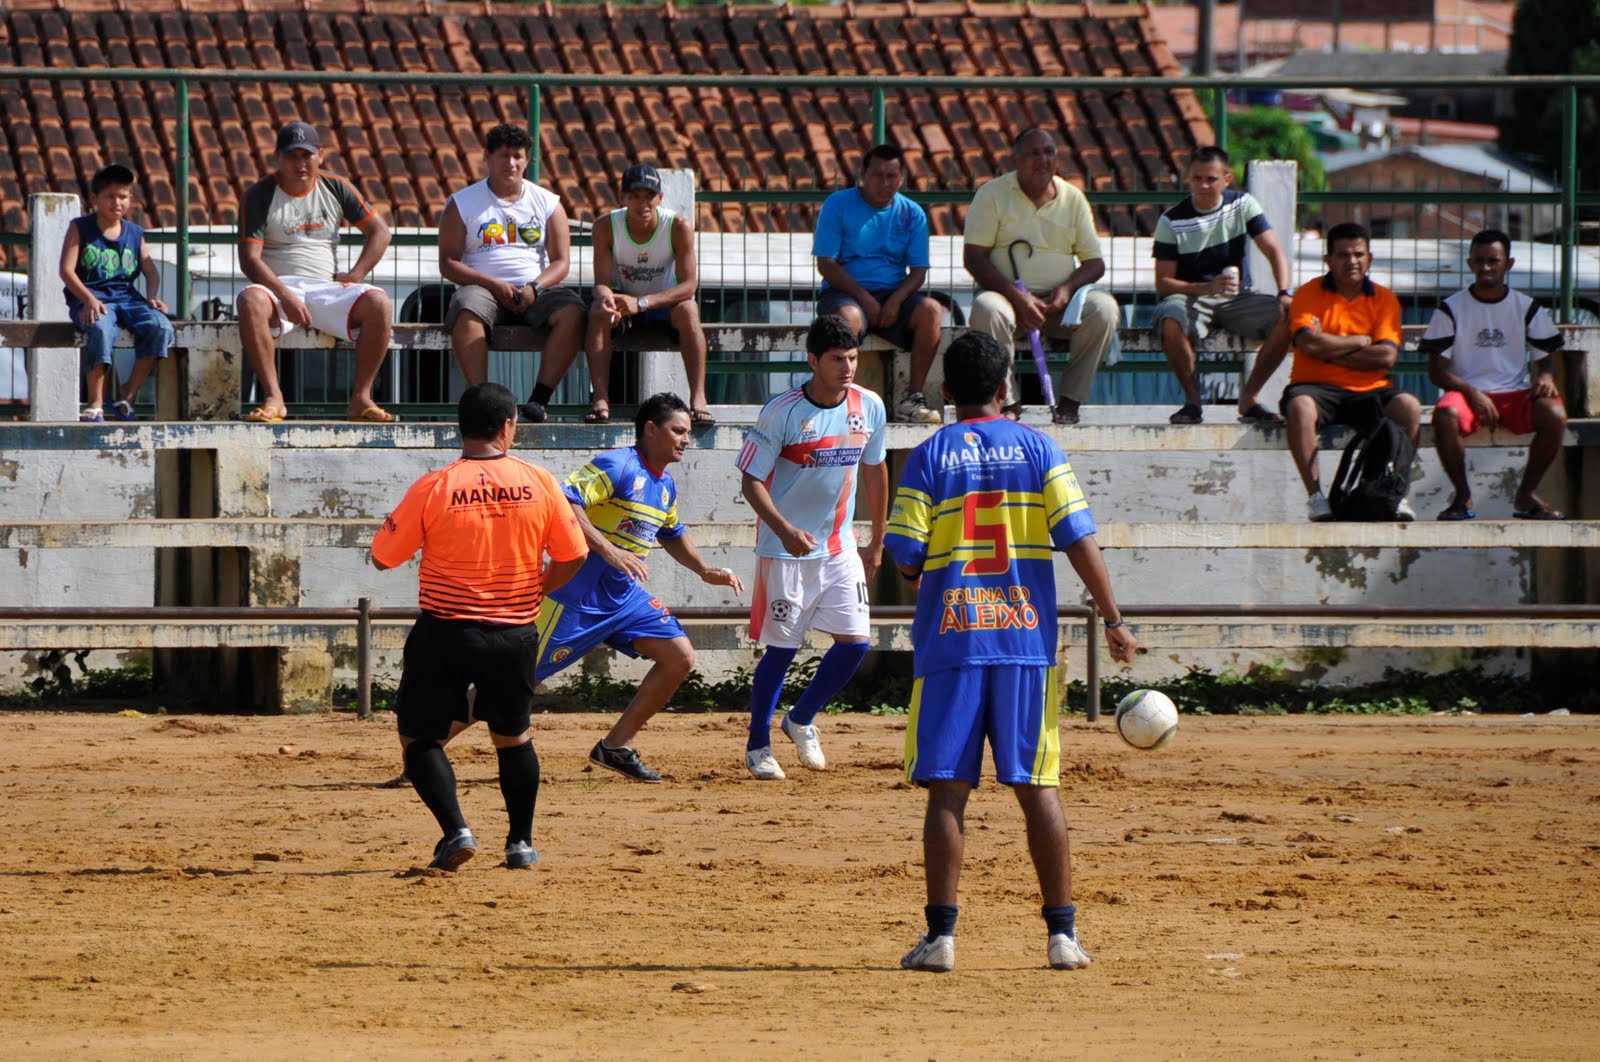 Atacante Wesley Braga é aposta do Fortaleza e já treina com o time; veja  detalhes do jogador - Jogada - Diário do Nordeste